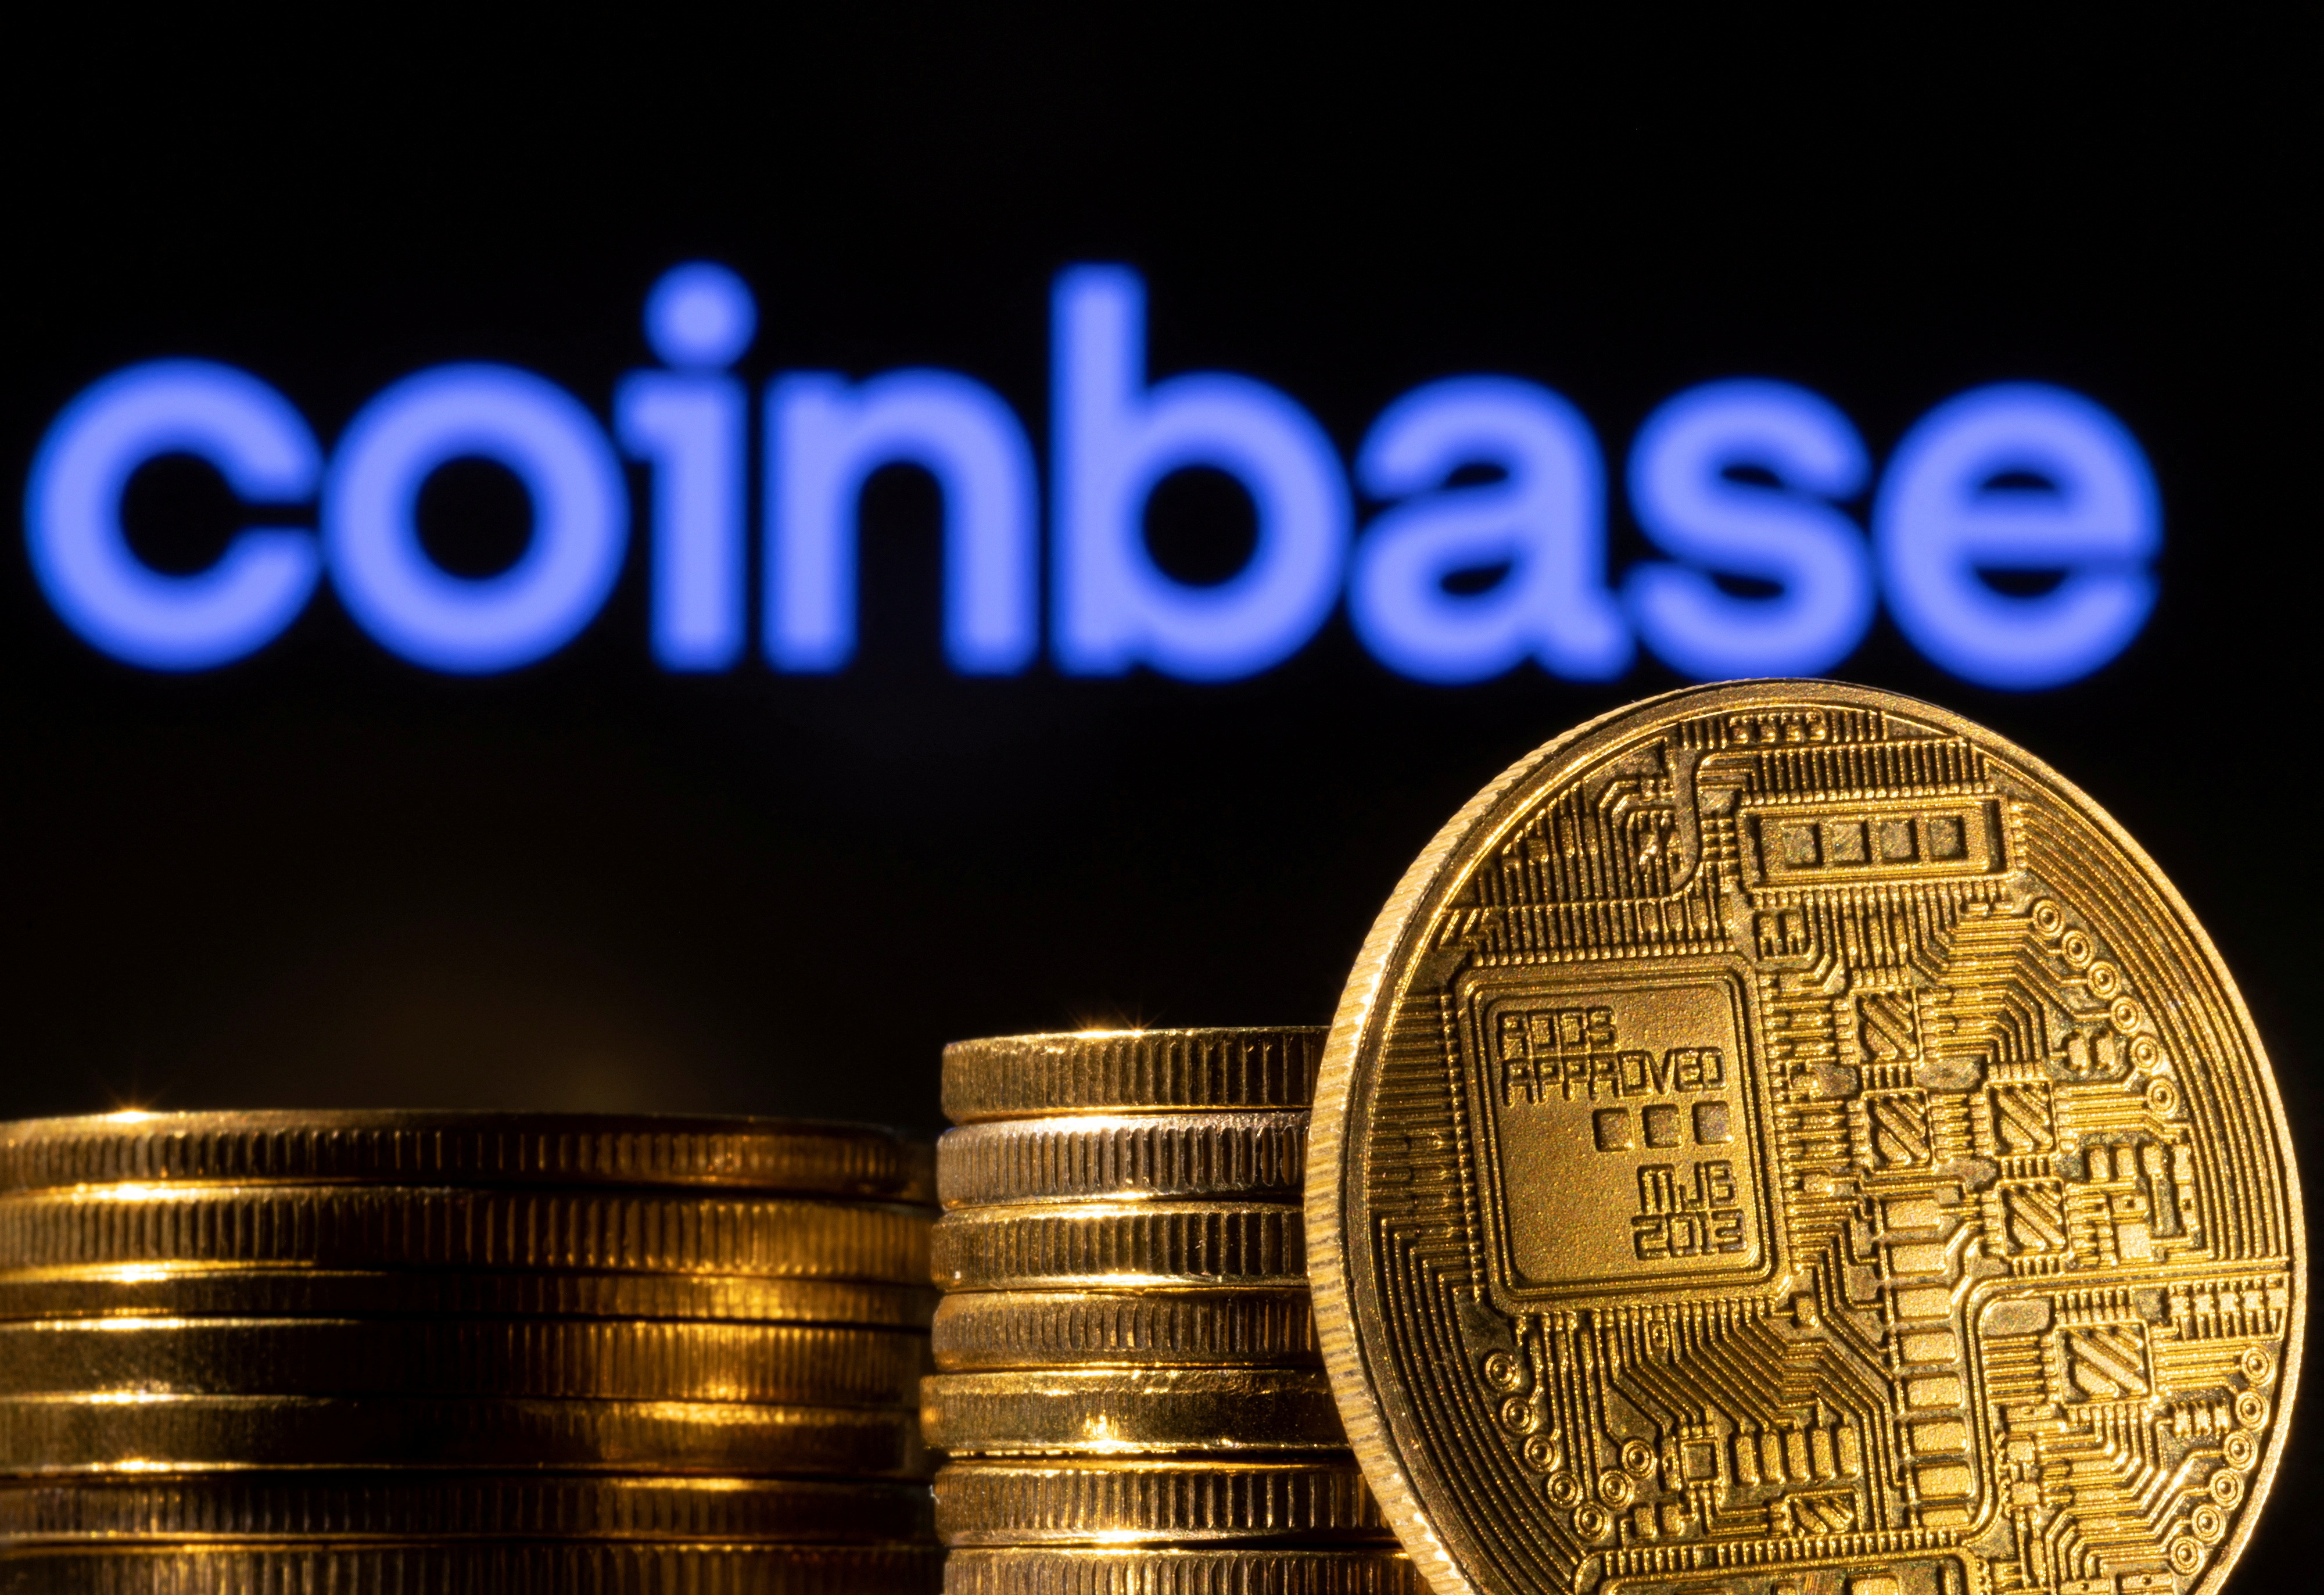 De afbeelding toont een weergave van de cryptocurrency en het Coinbase-logo